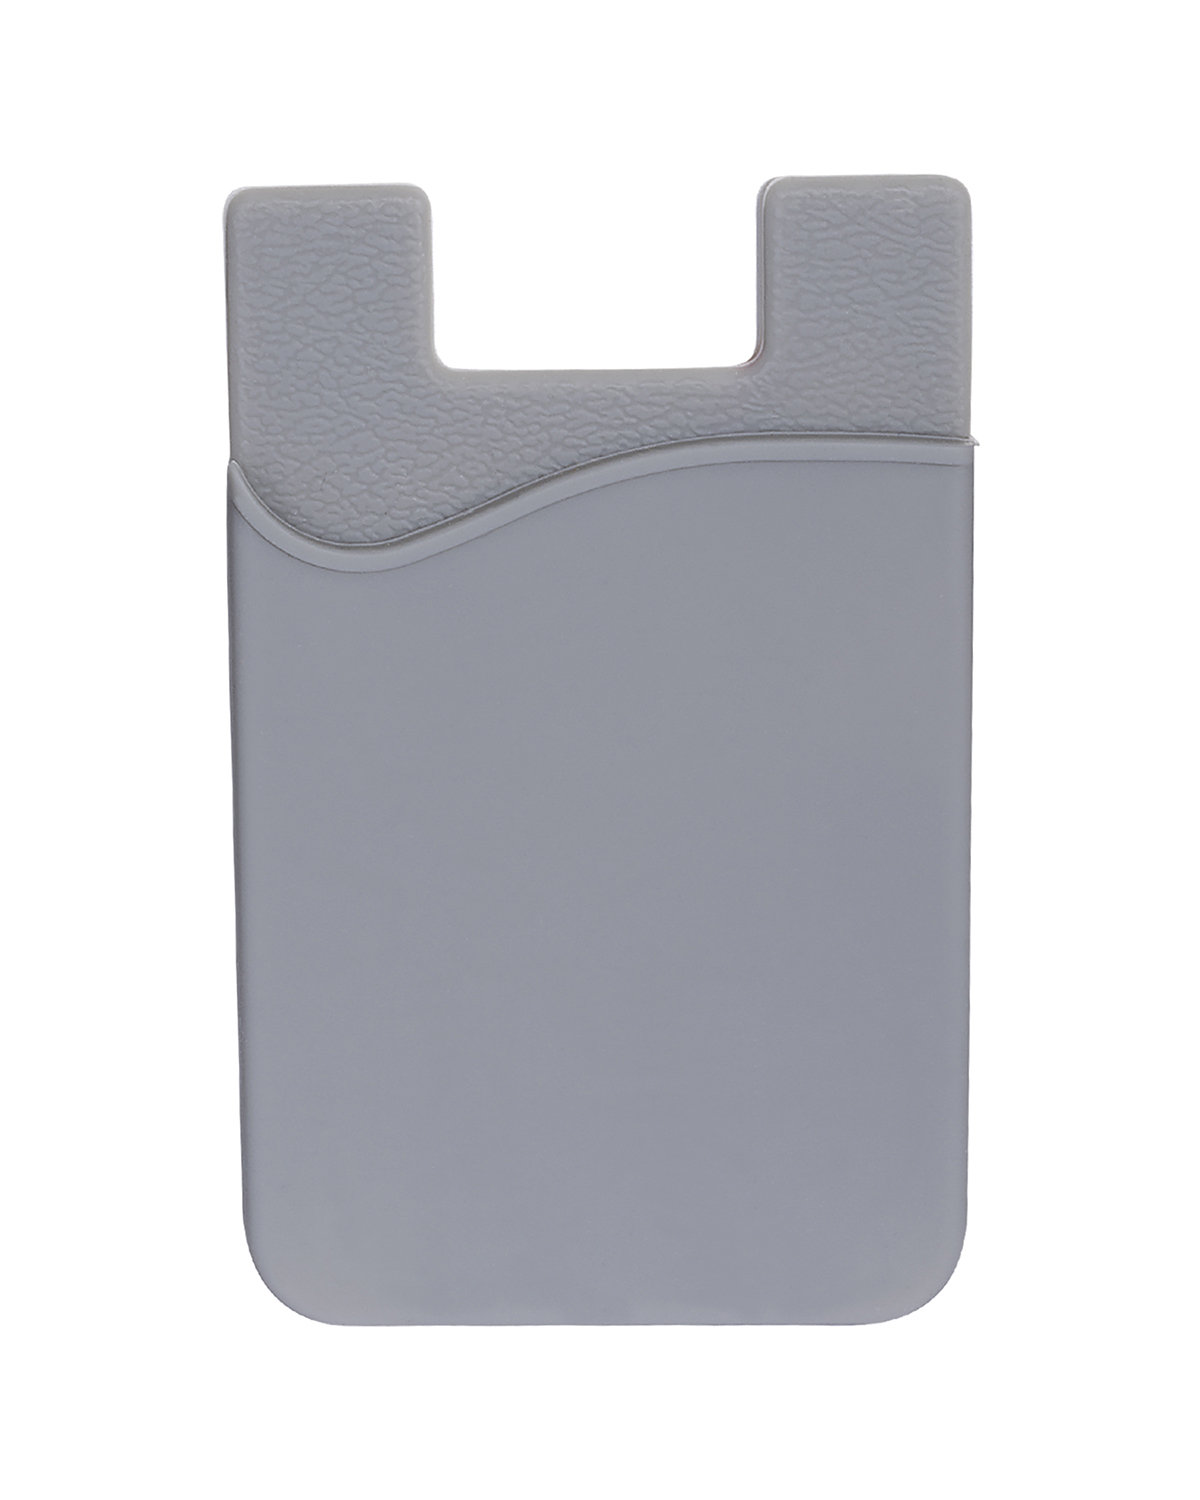 Prime Line Econo Silicone Mobile Device Pocket gray 